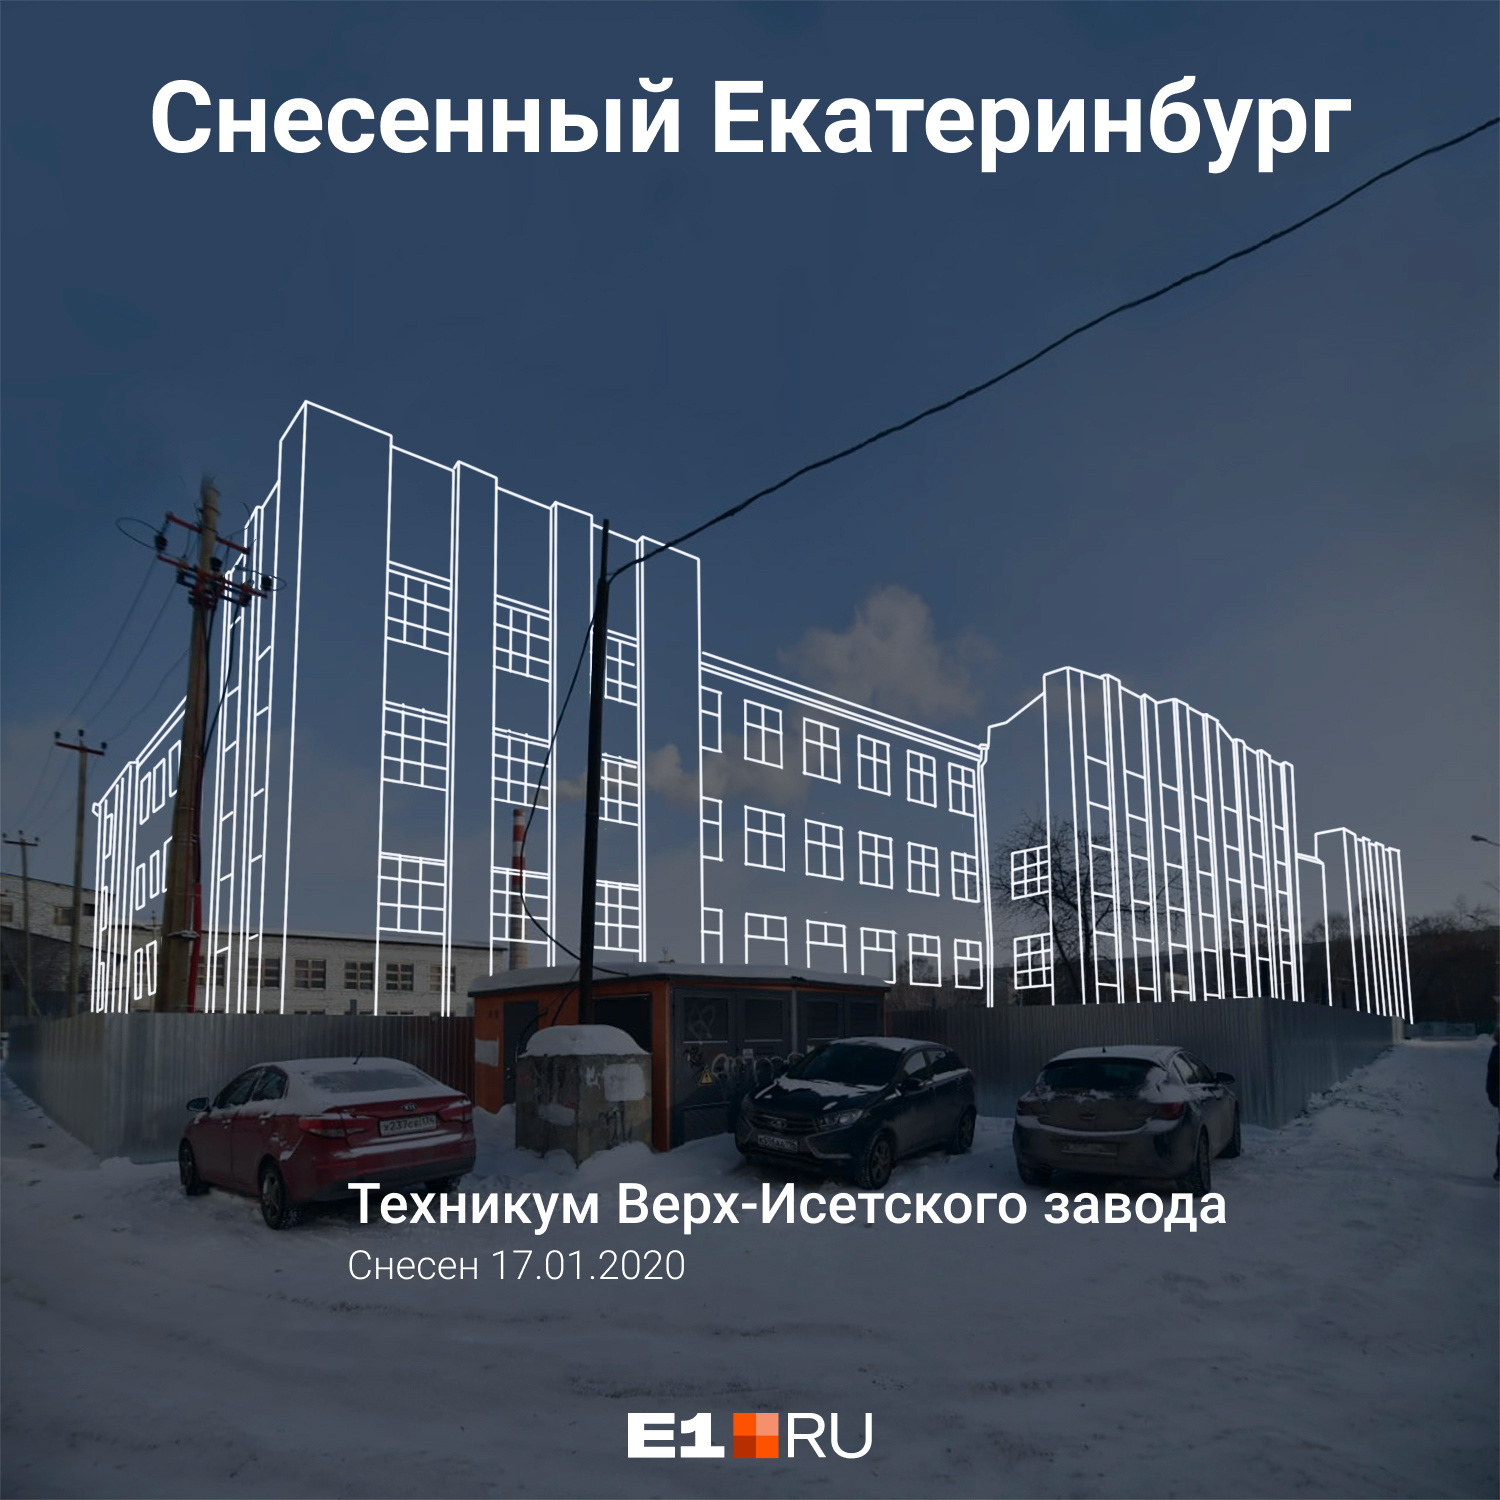 Техникум Верх-Исетского завода начали сносить в январе 2020 года